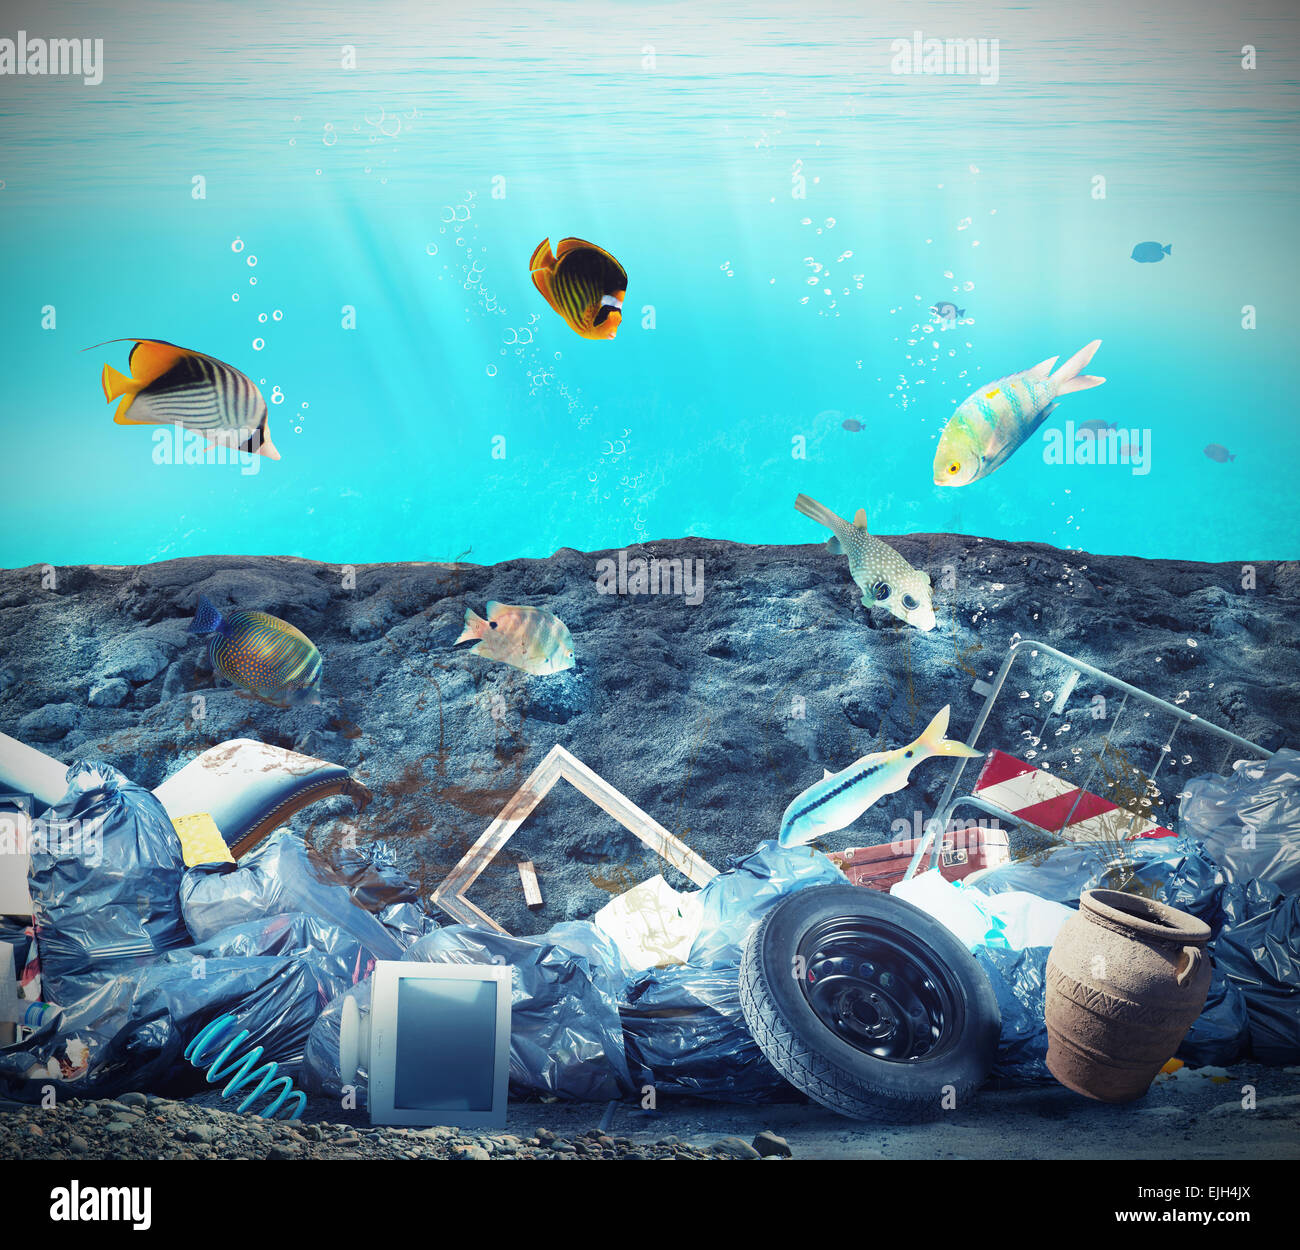 La contaminación de los fondos marinos Foto de stock